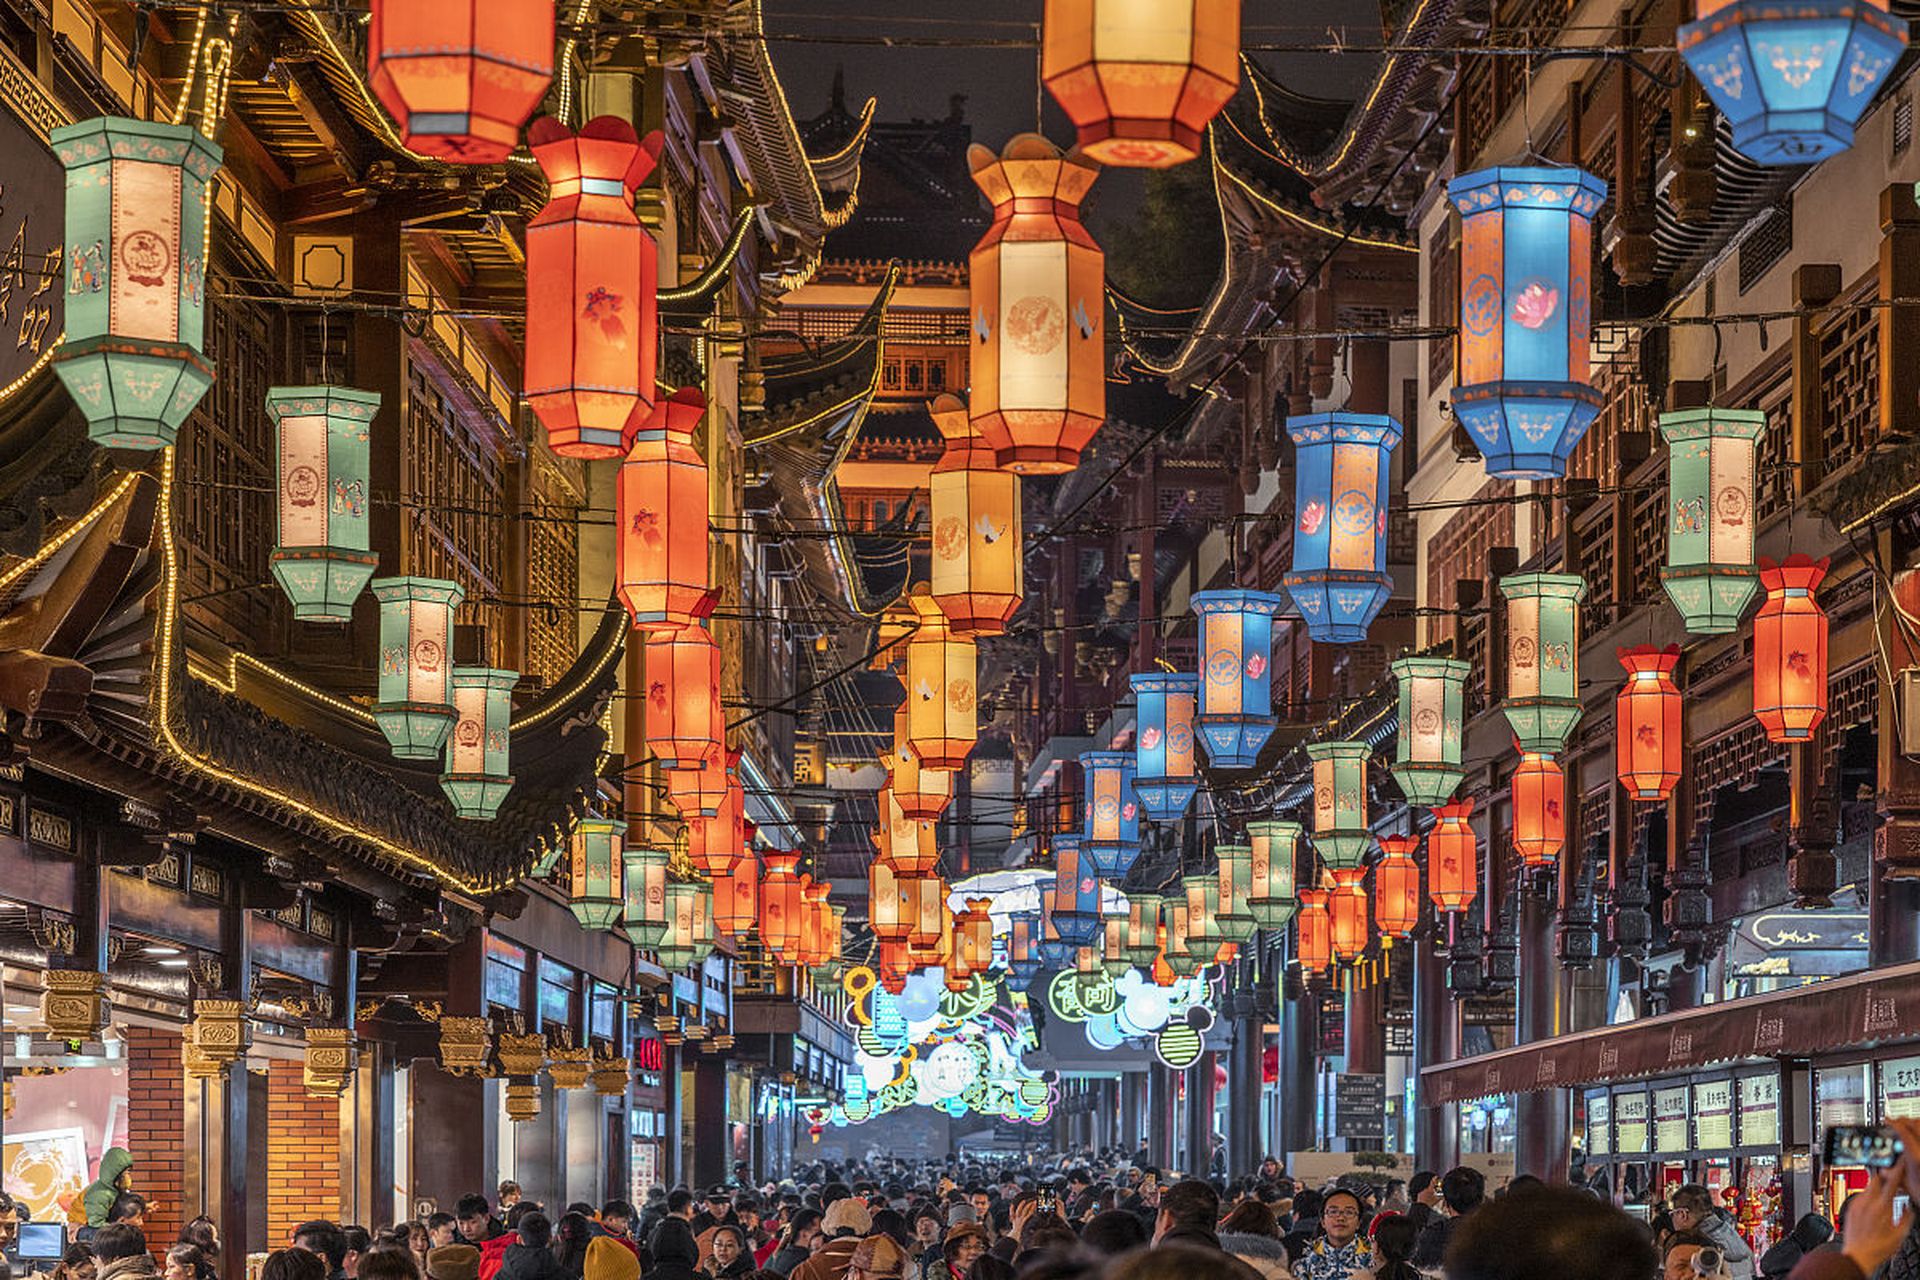 98宋朝的夜市文化是中国历史上独特的一种市井文化,充满了热闹,喧嚣